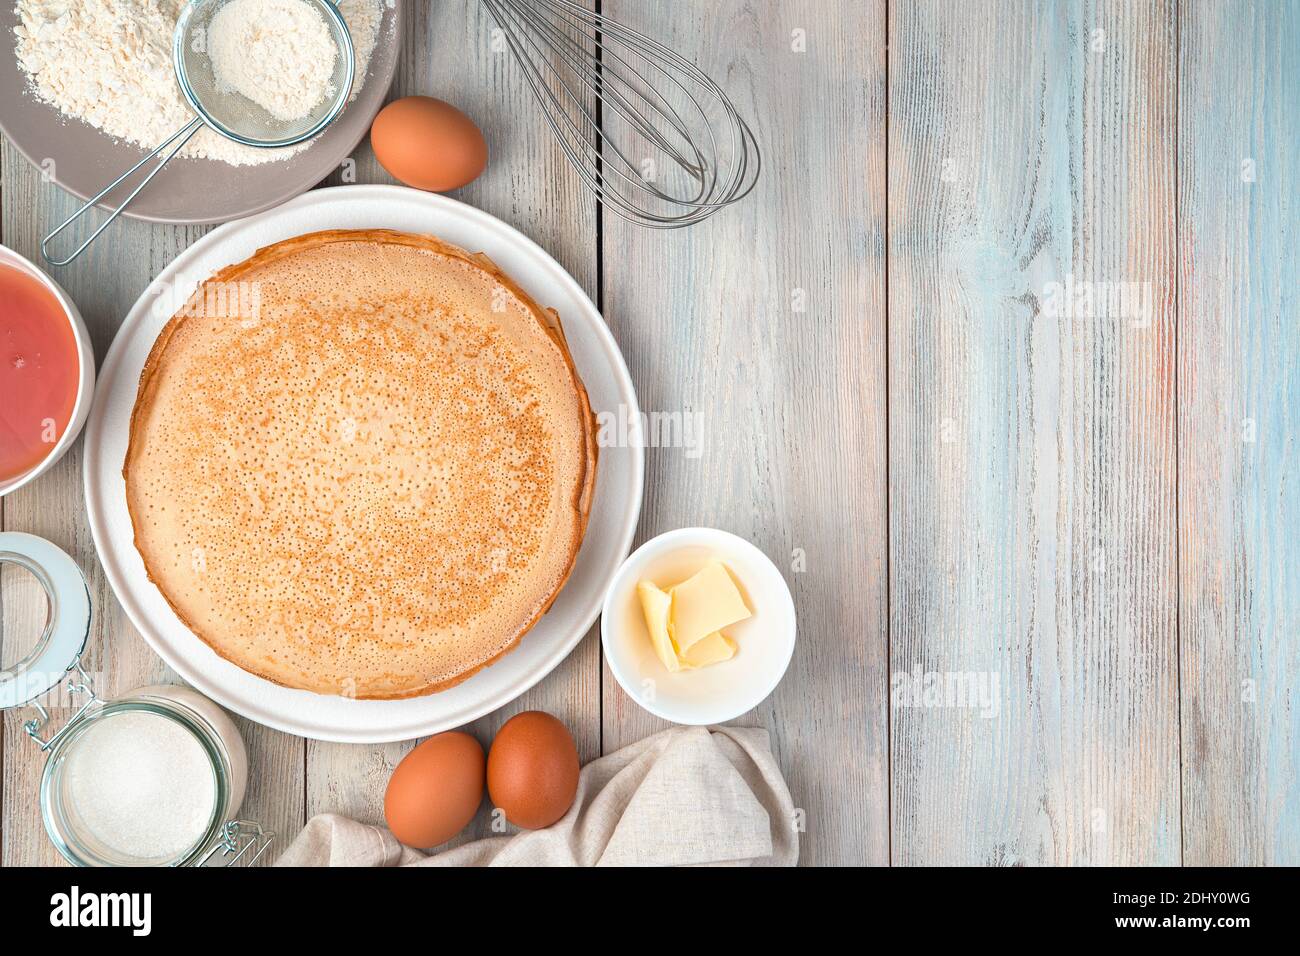 Piatto con frittelle, uova, farina, burro, miele su sfondo chiaro. Foto Stock